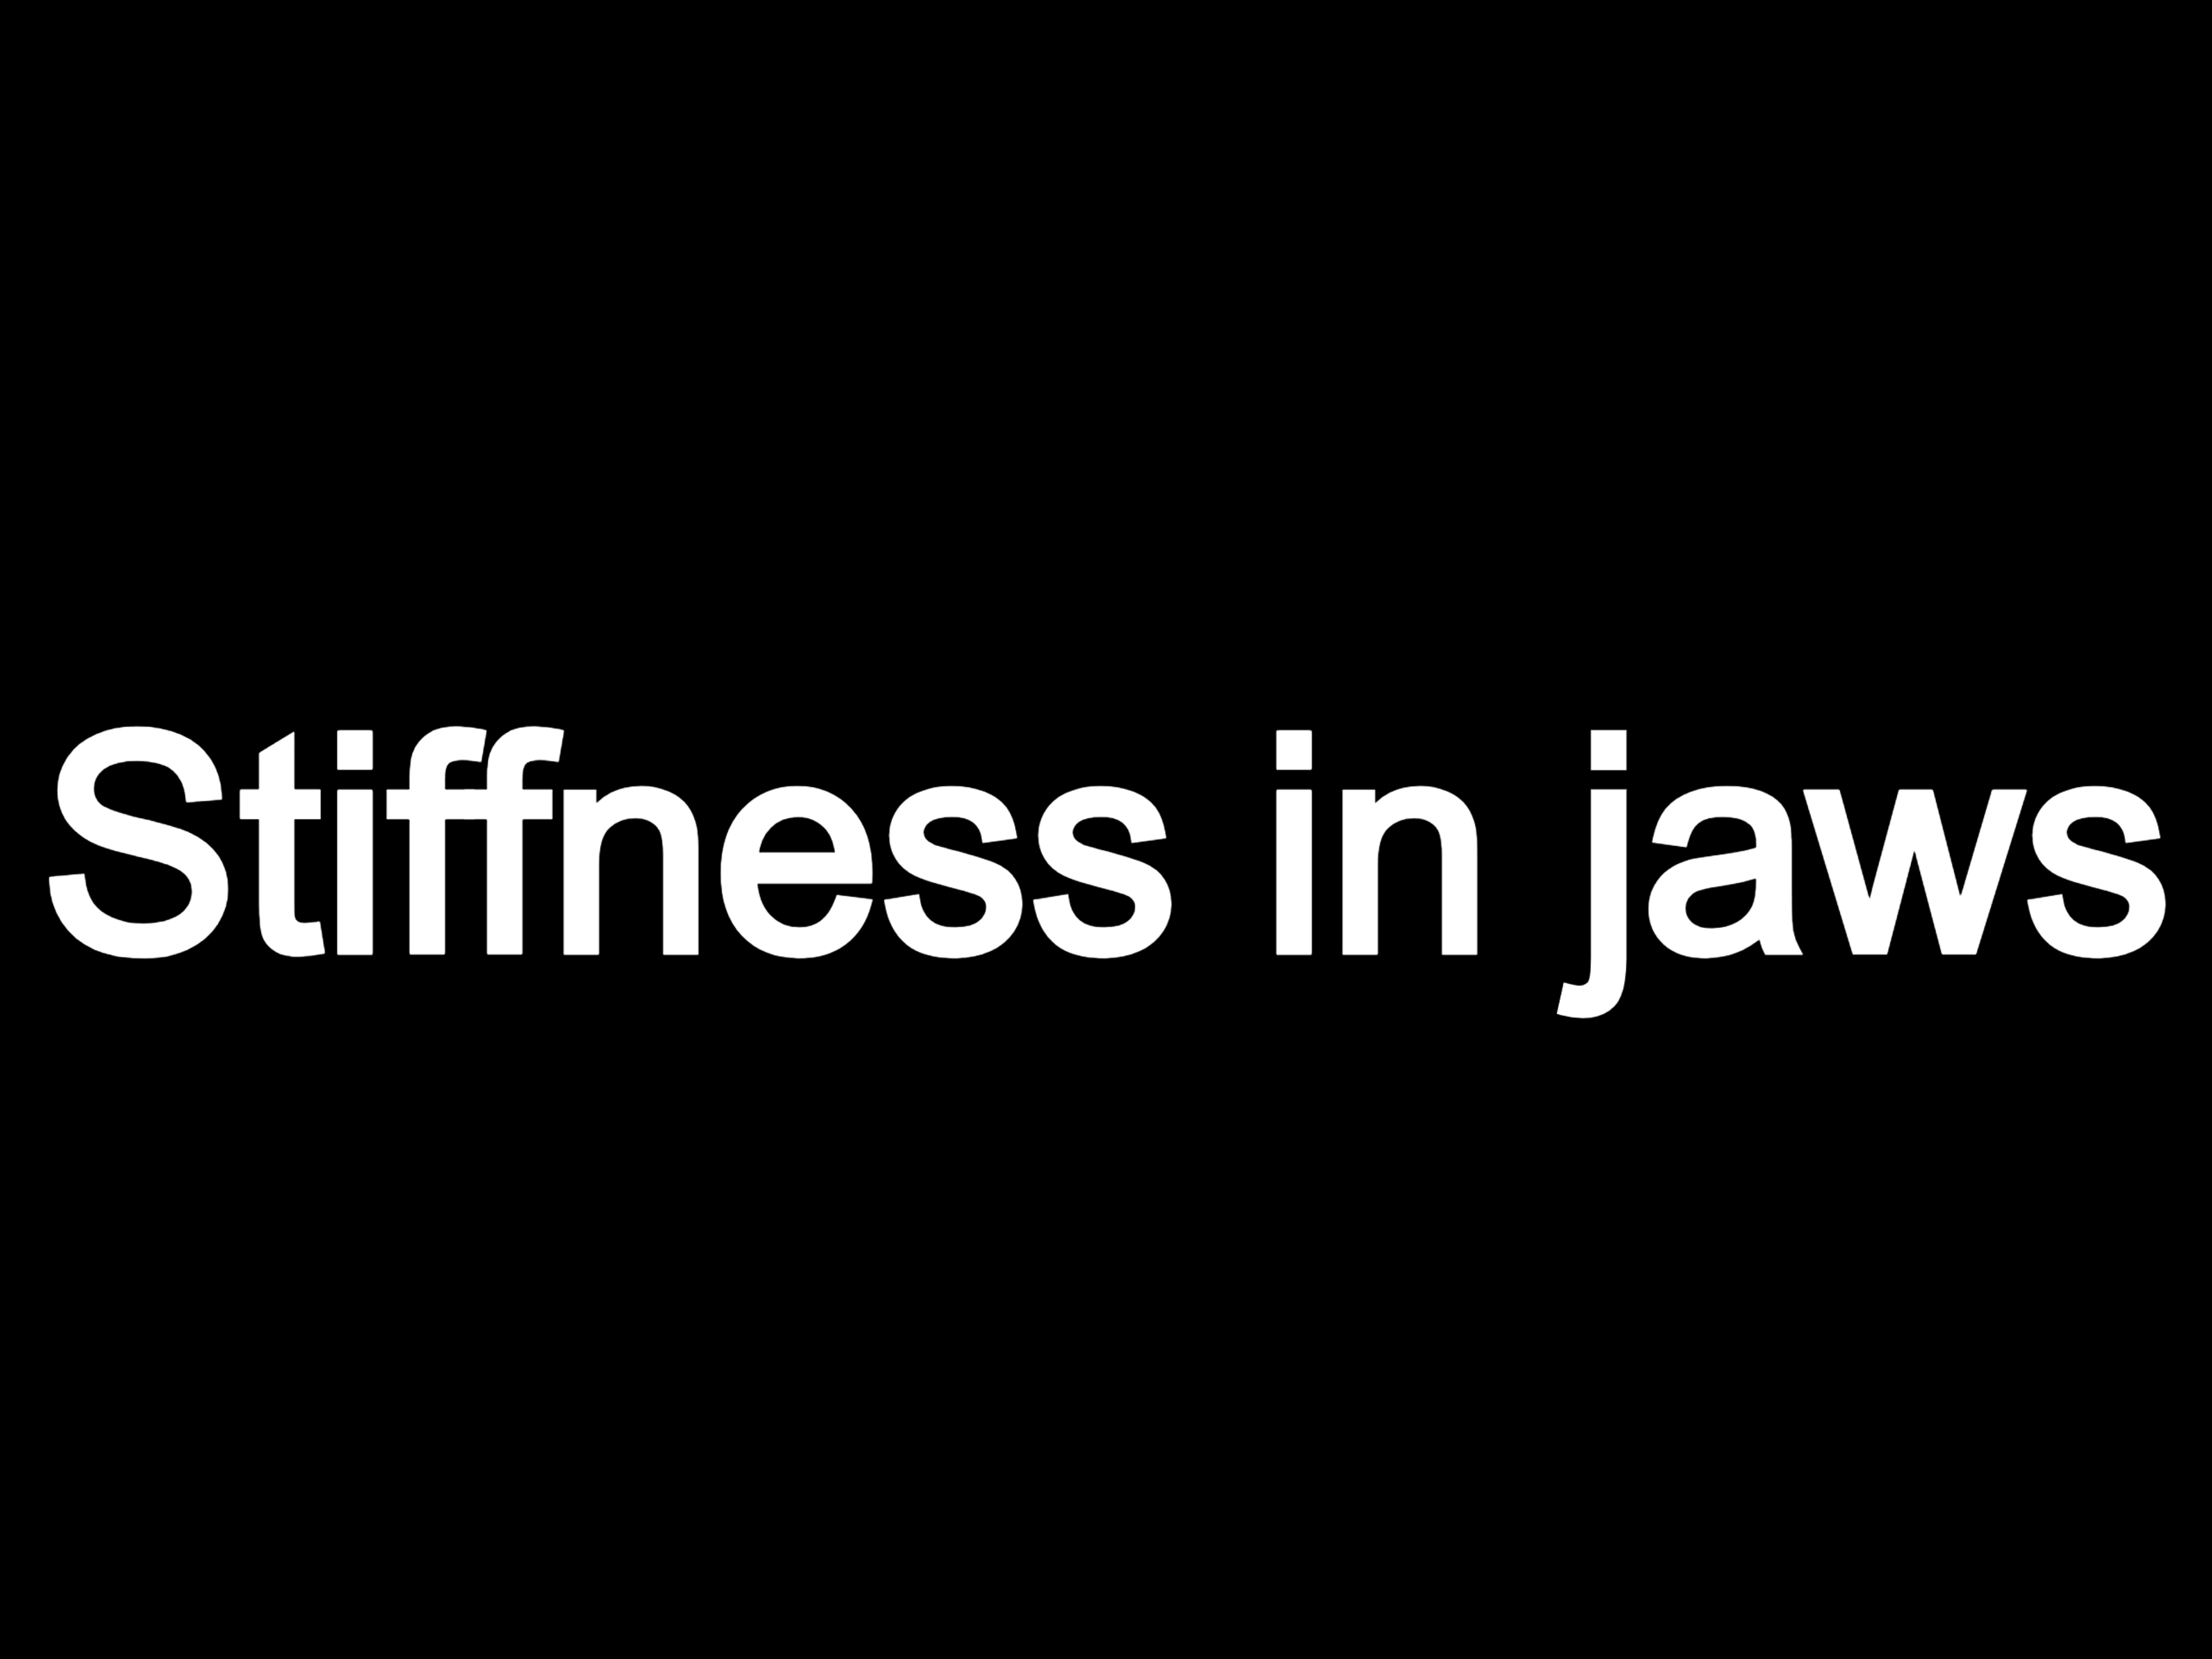 Stiffness in jaws